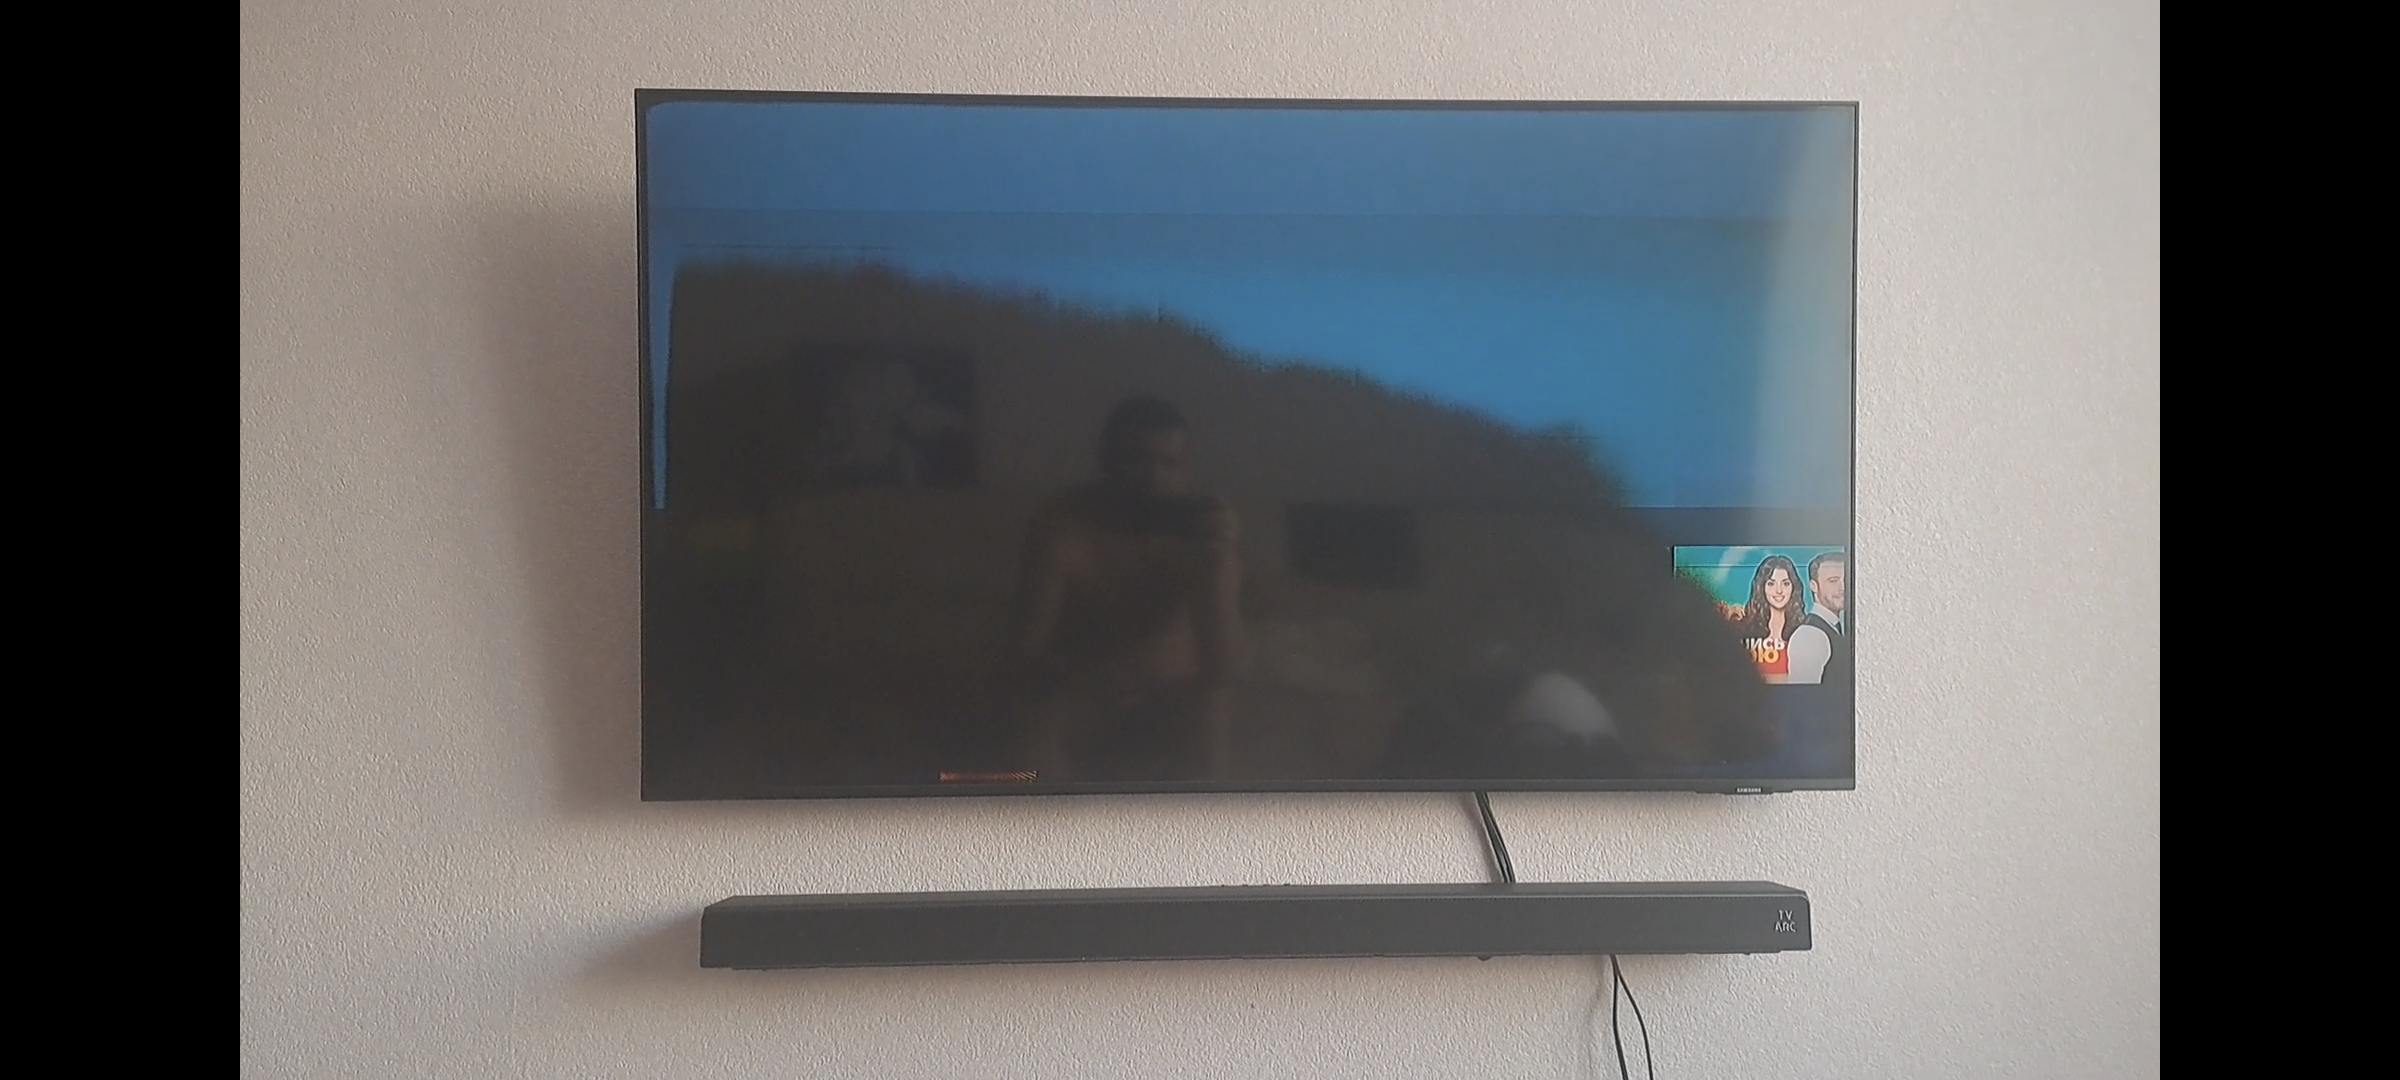 Самсунг телевизоры потемнел экран